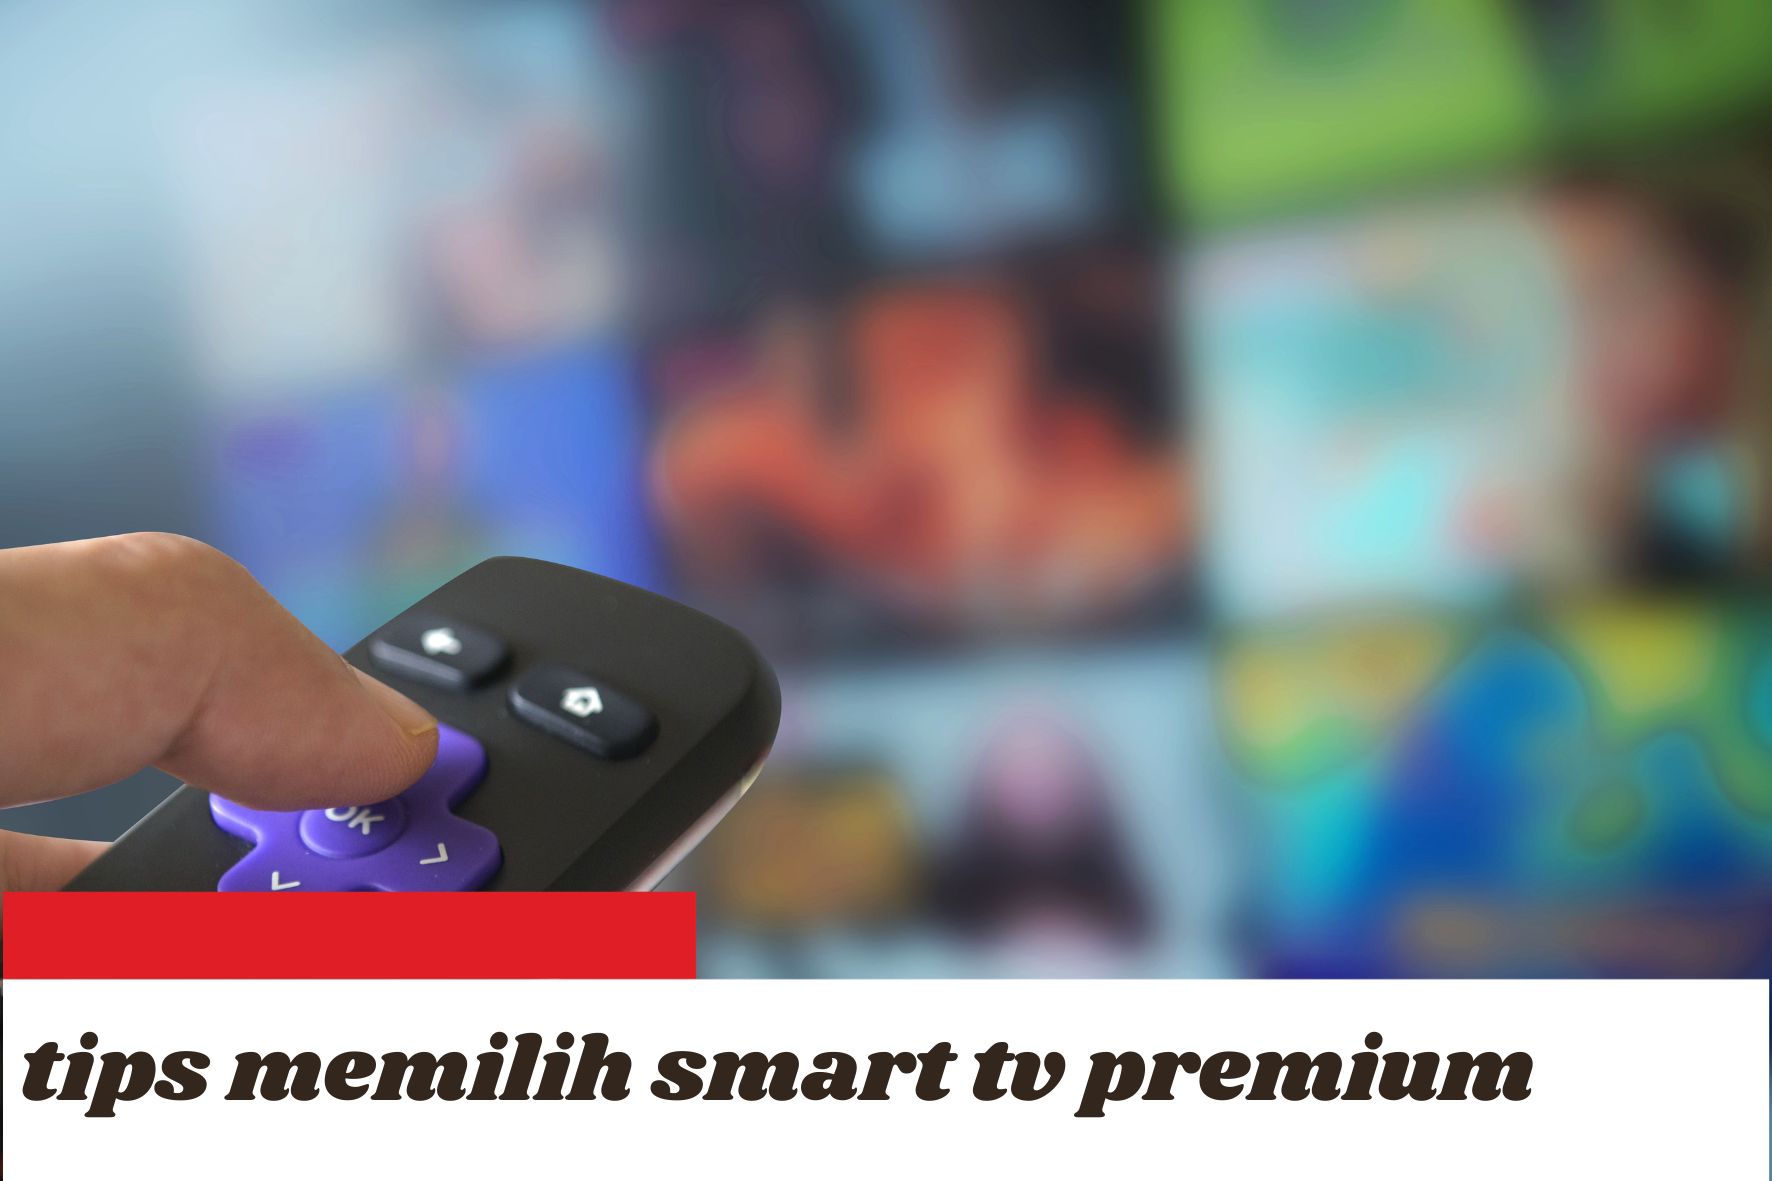 Tips Memilih Smart TV Kualitas Premium Harga Terjangkau, Jangan Asal Beli!